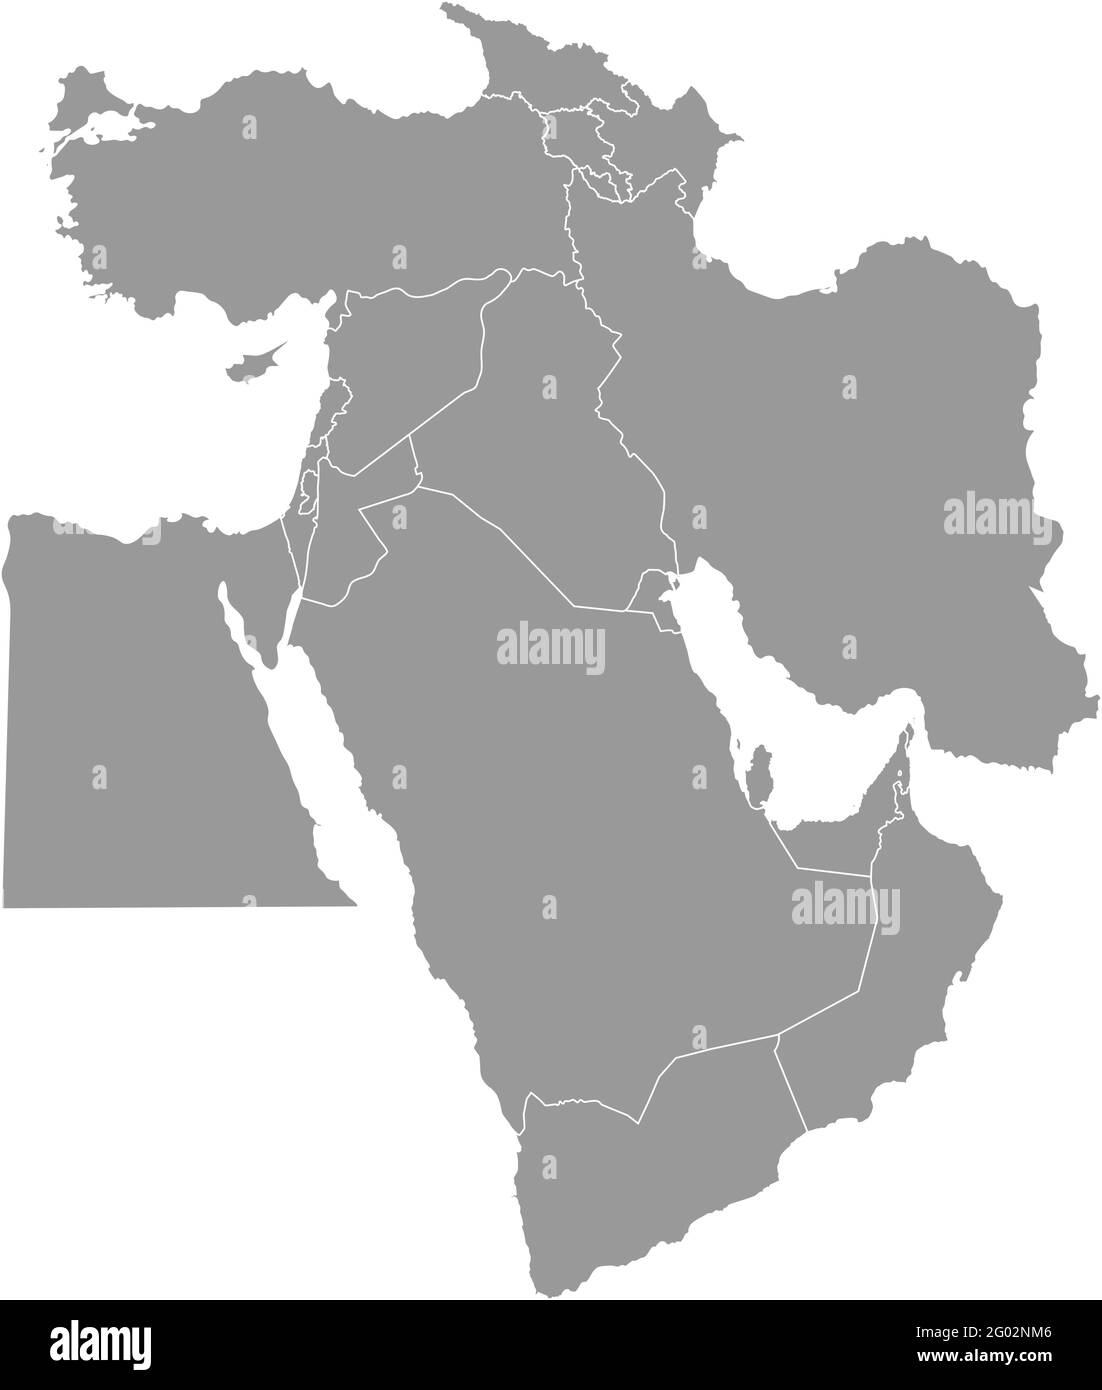 Illustrazione vettoriale con mappa semplificata dei paesi asiatici. Medio Oriente. Stati confina con Turchia, Georgia, Armenia, Emirati Arabi Uniti, Arabia Saudita Illustrazione Vettoriale